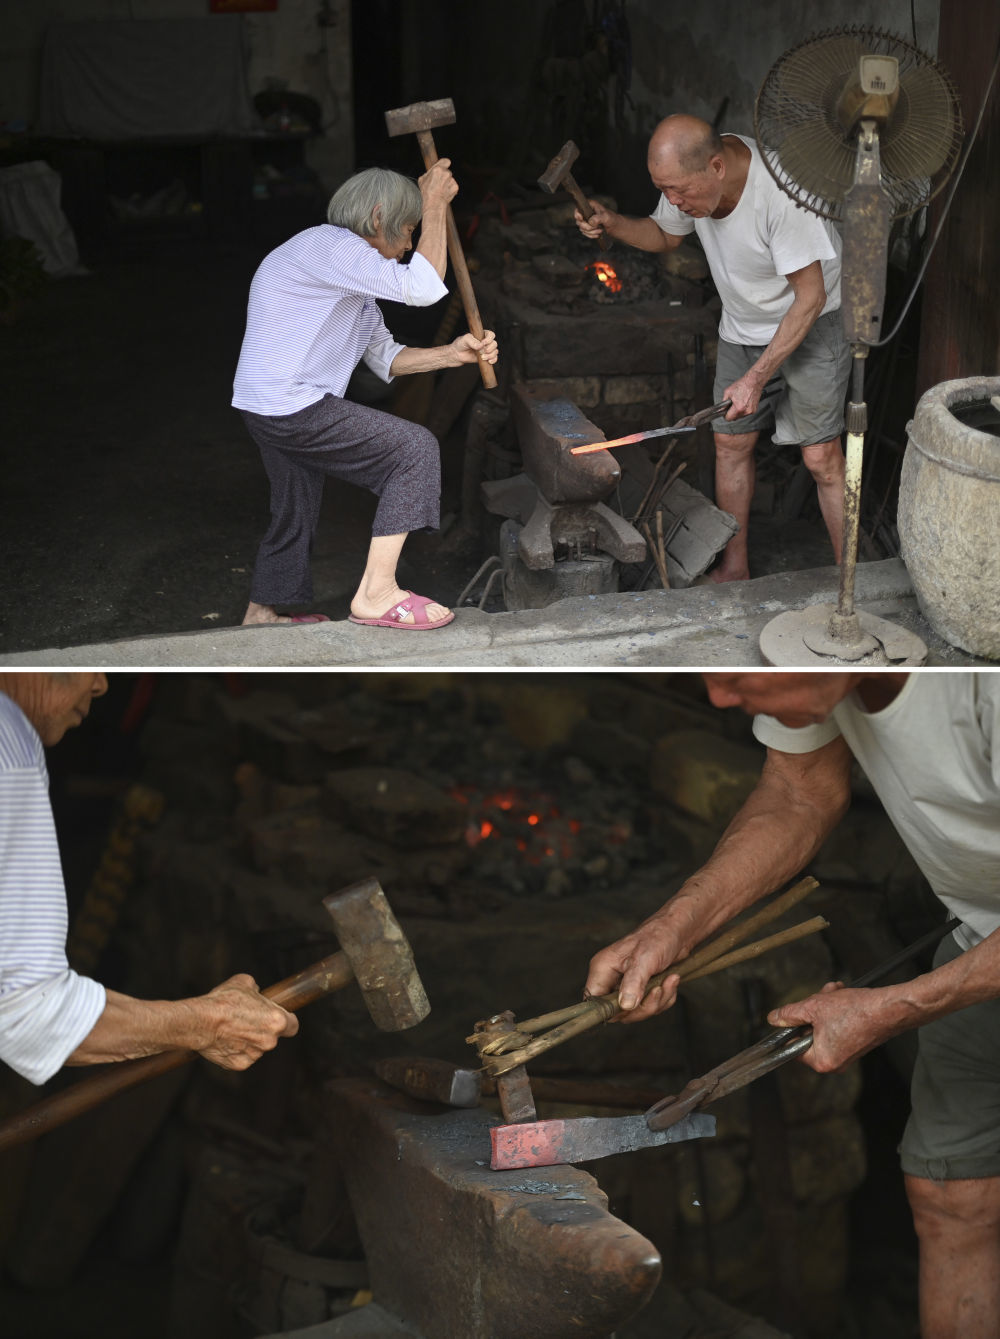 在广西柳州市柳江区三都镇，83岁的韦初元（右）和80岁的老伴韦秀依在制作农具（4月16日摄）。韦初元经营铁匠铺已经有60年，如今他和老伴依旧坚持为周边村民制作农具。